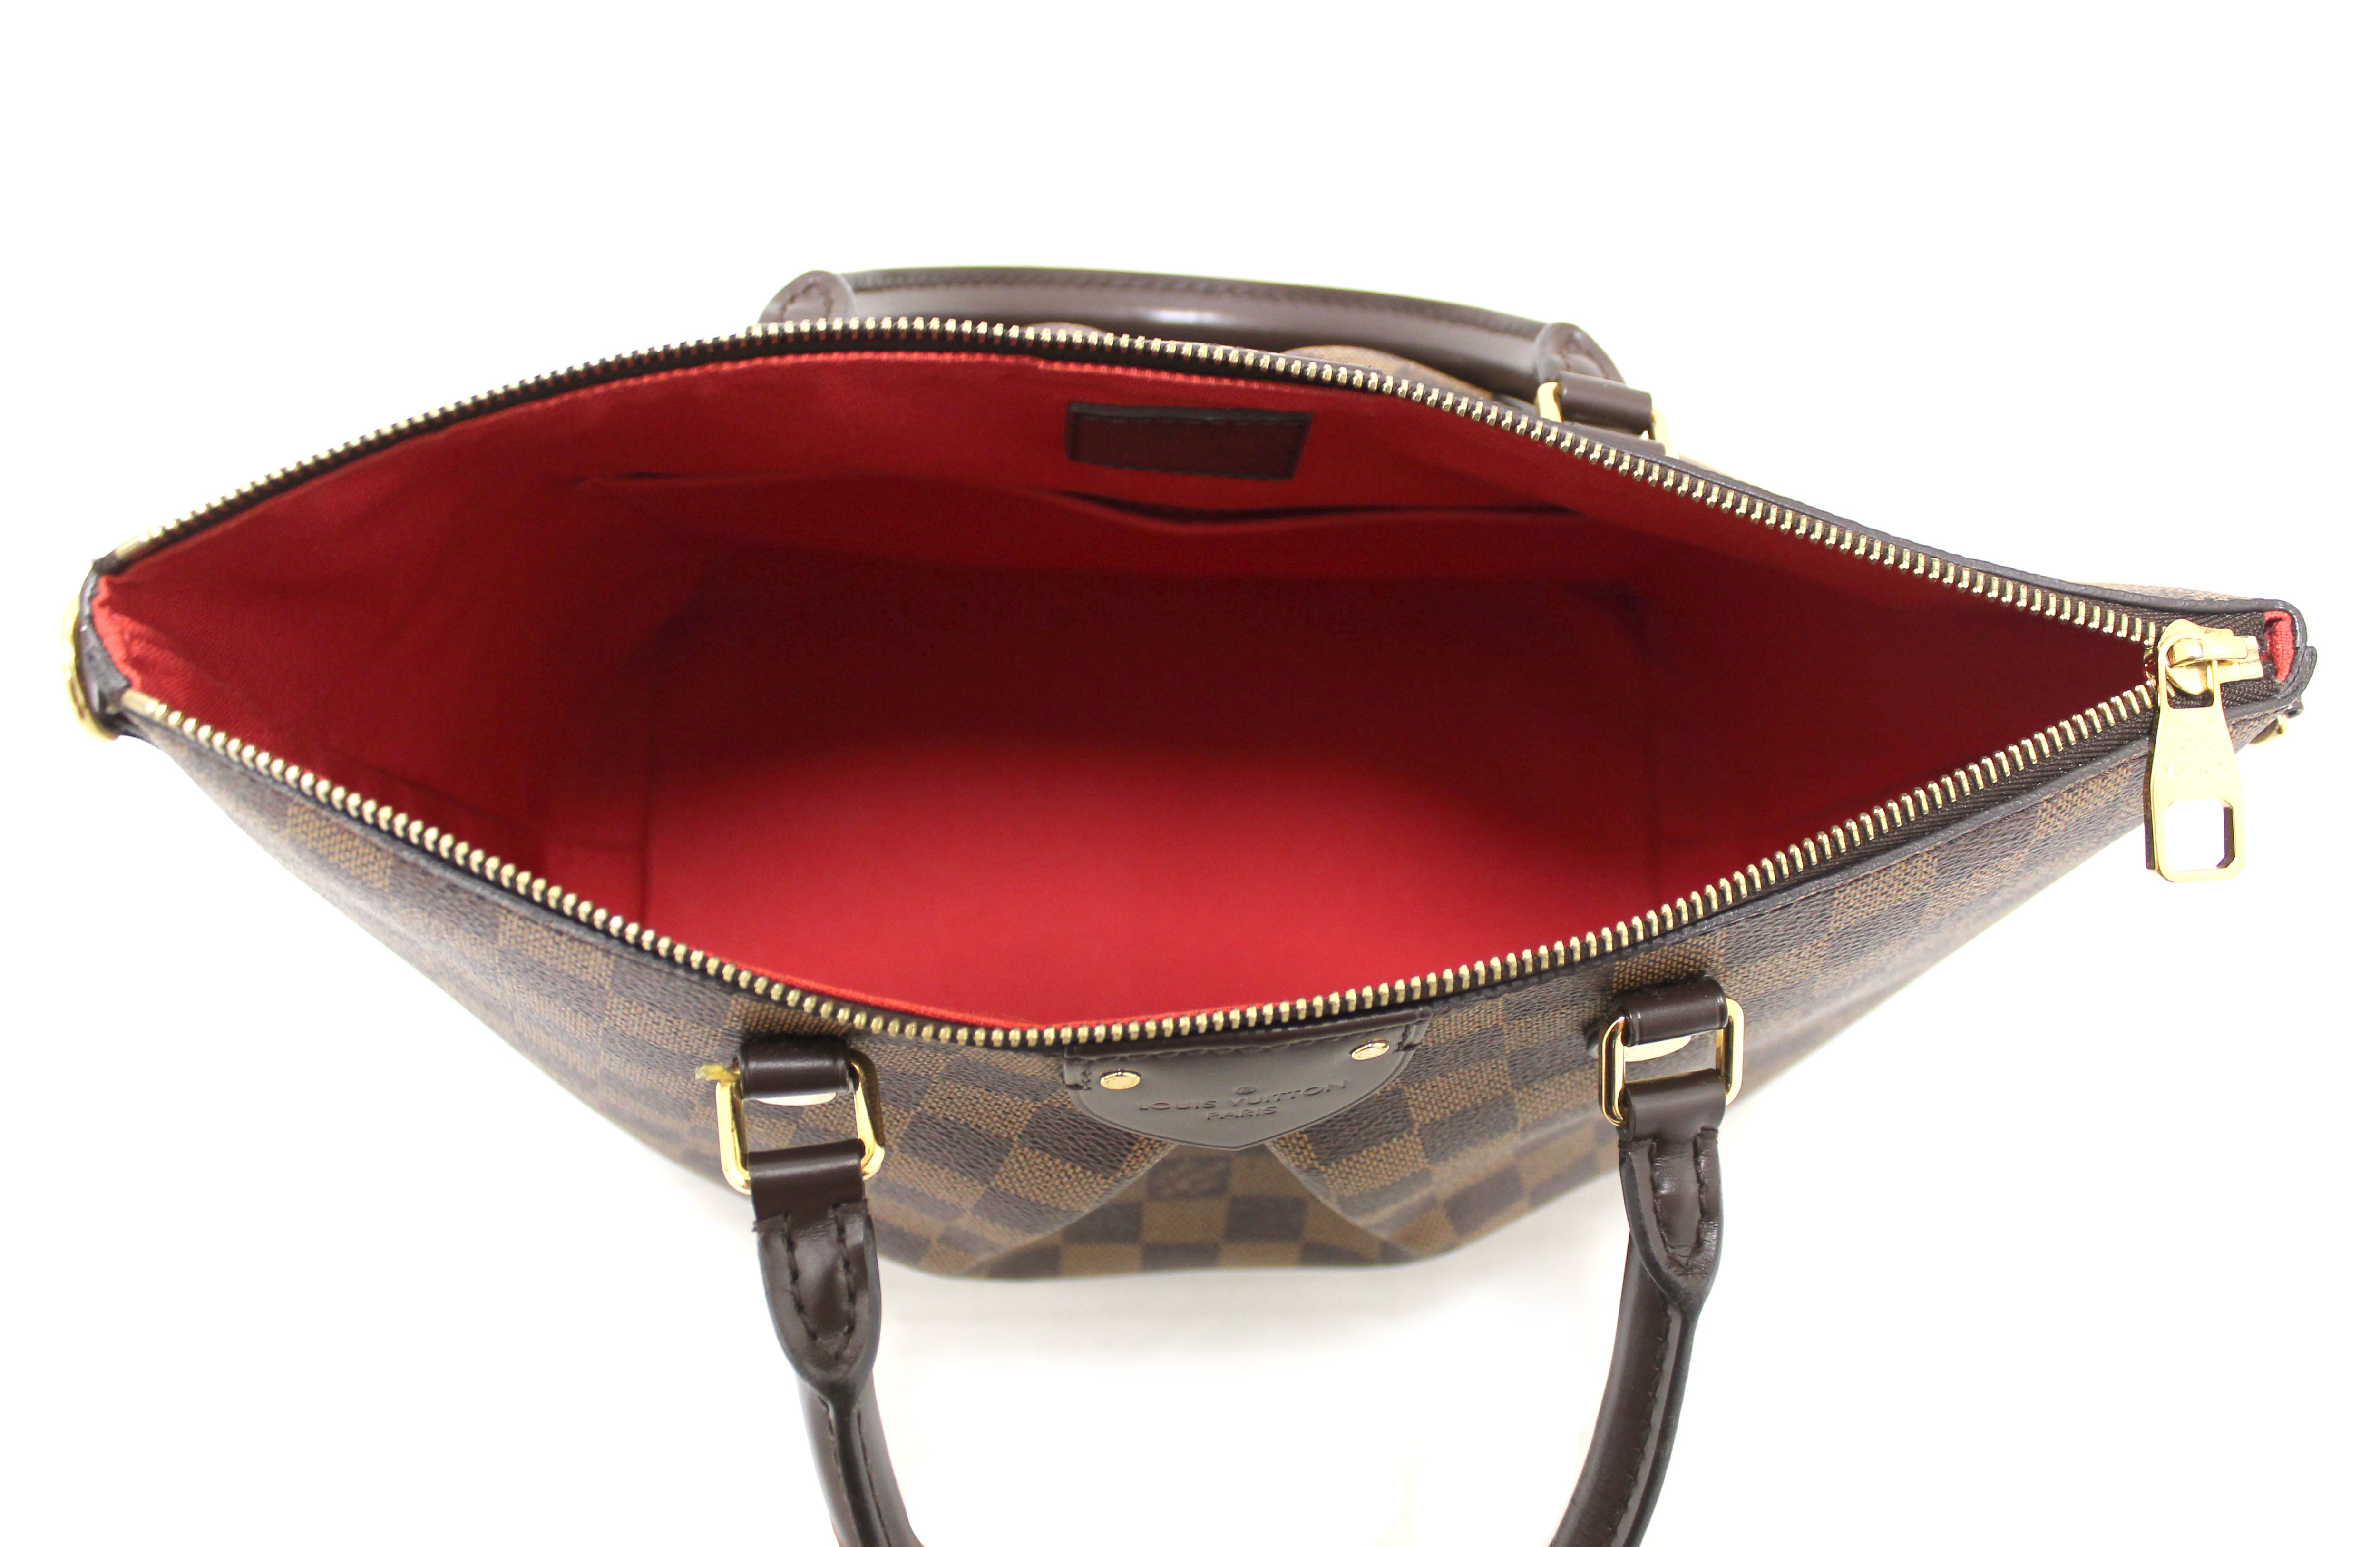 Authentic Louis Vuitton Damier Ebene Canvas Siena MM Handbag